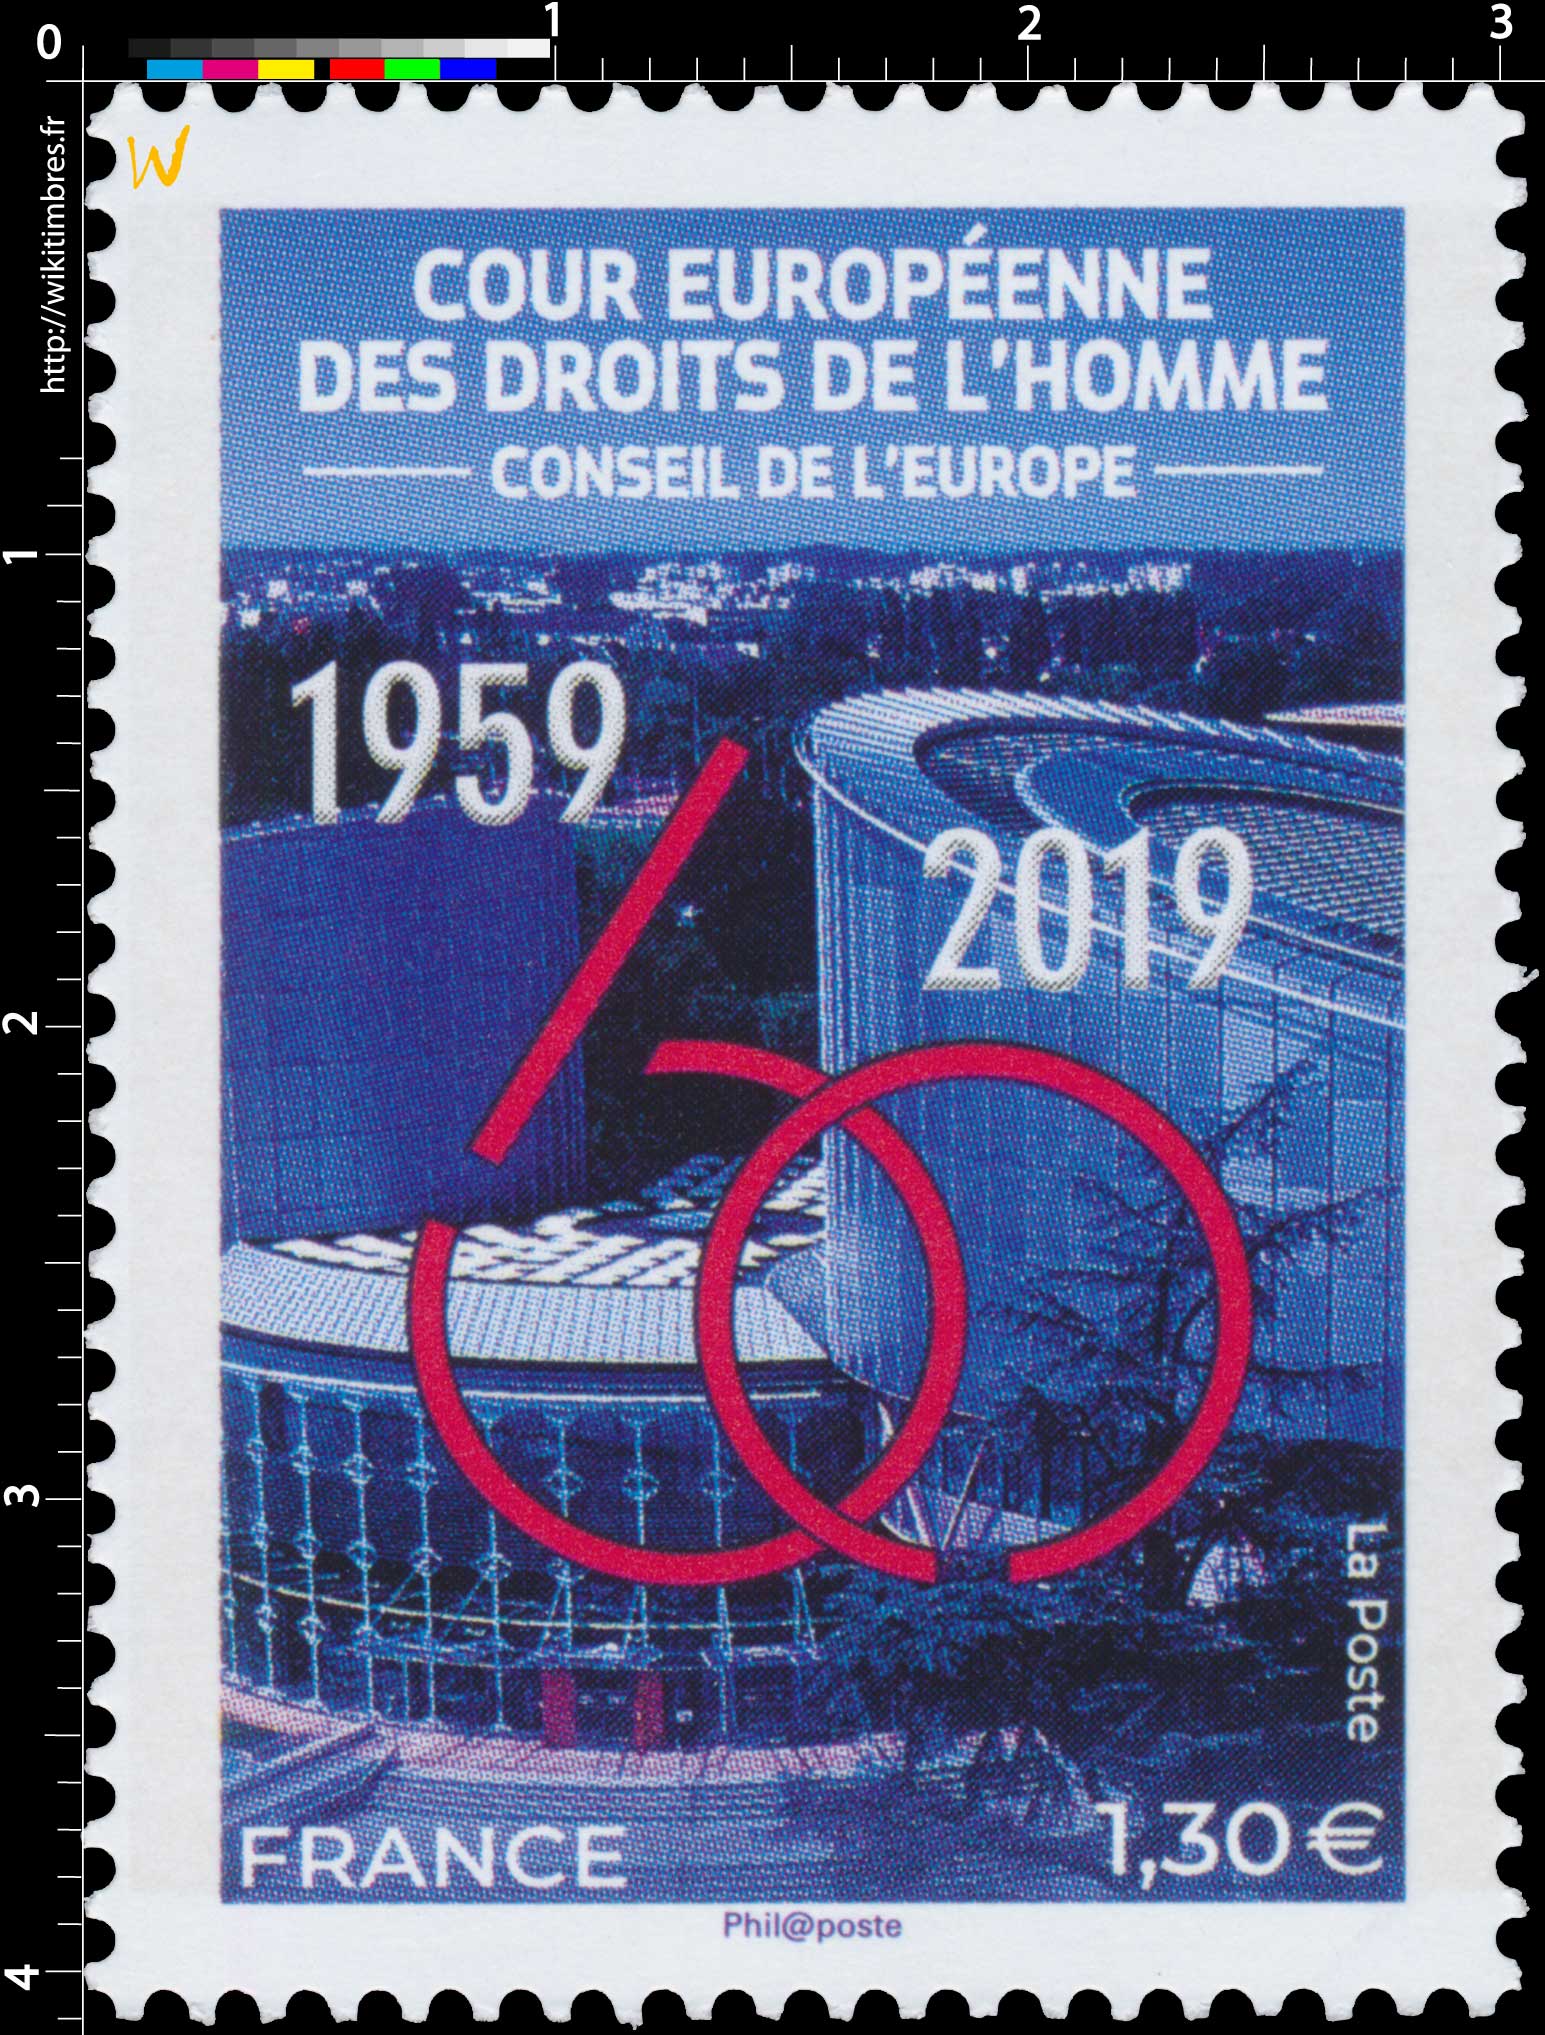 Conseil de l’Europe  Cour Européenne des Droits de l'Homme 1959 - 2019